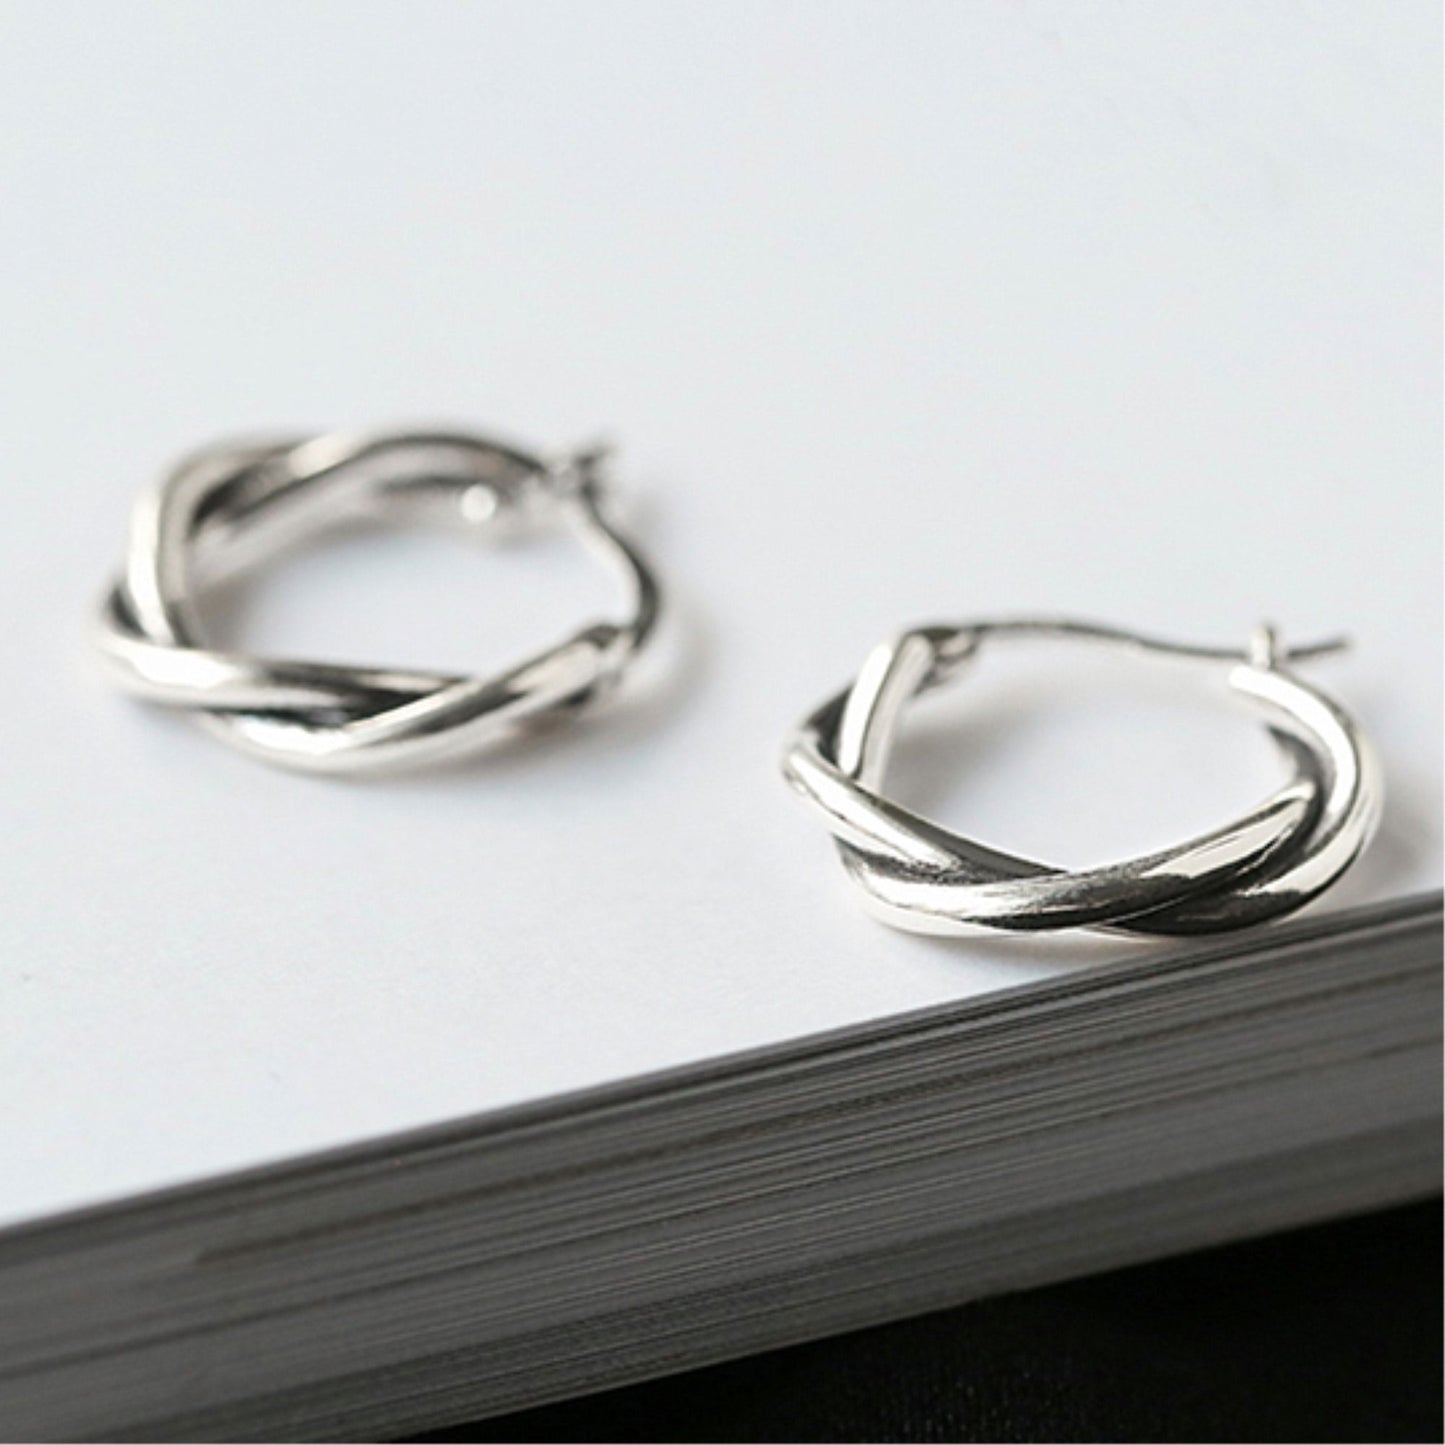 19mm Sterling Silver Oxidized Twist Hoop Earrings with Knot Detail - sugarkittenlondon